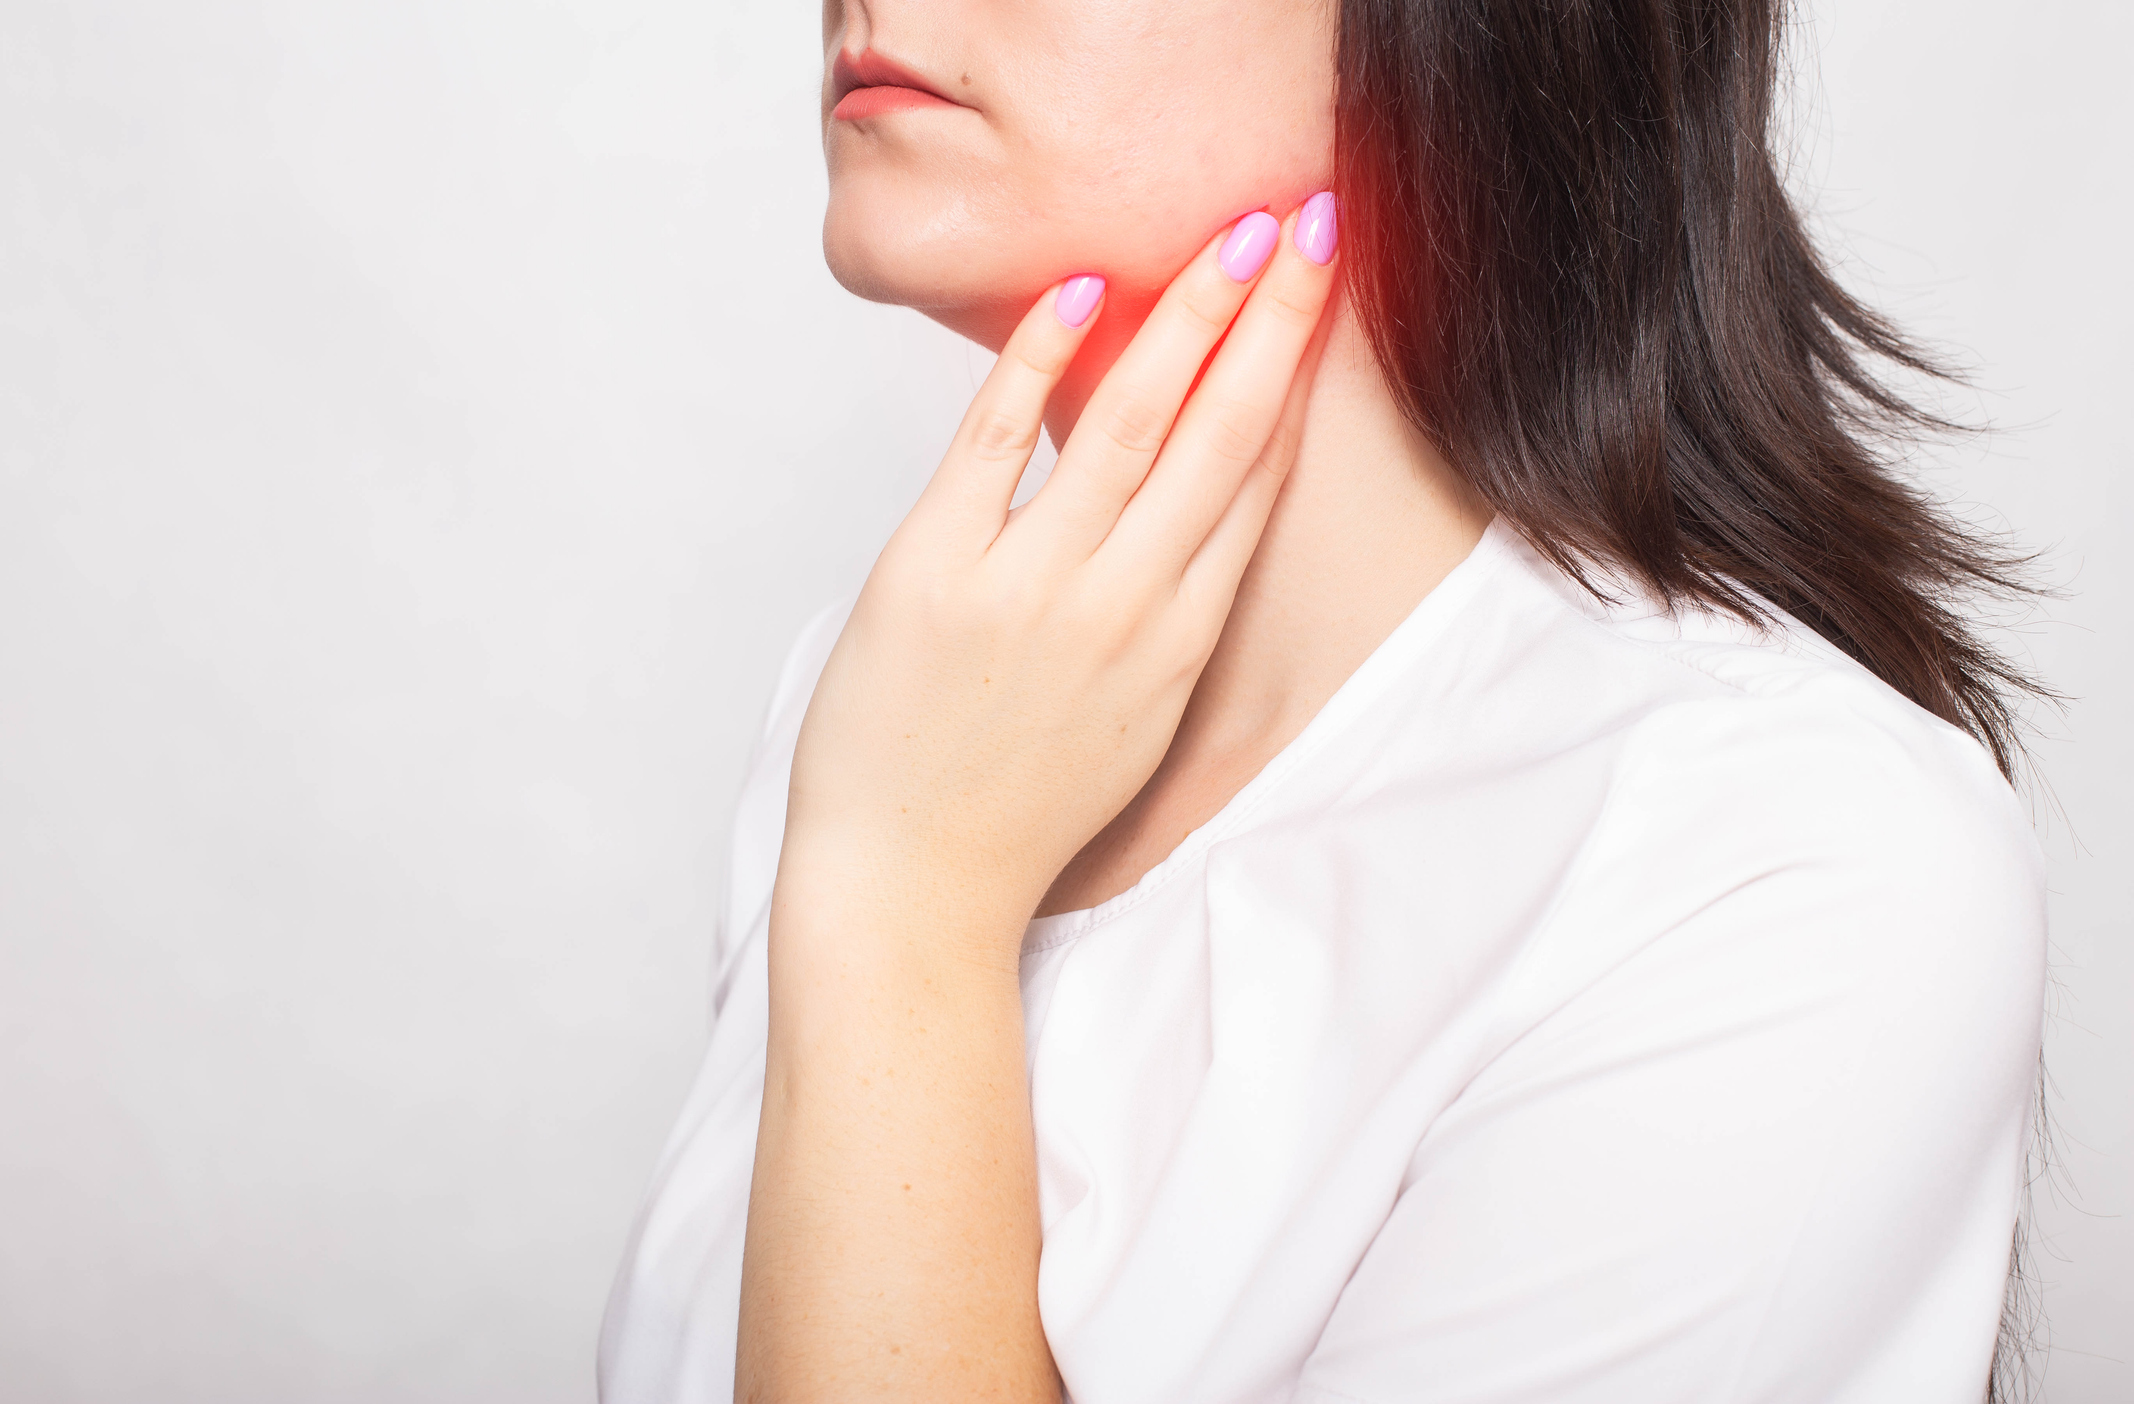 Sintomas que podem indicar um câncer de glândulas salivares